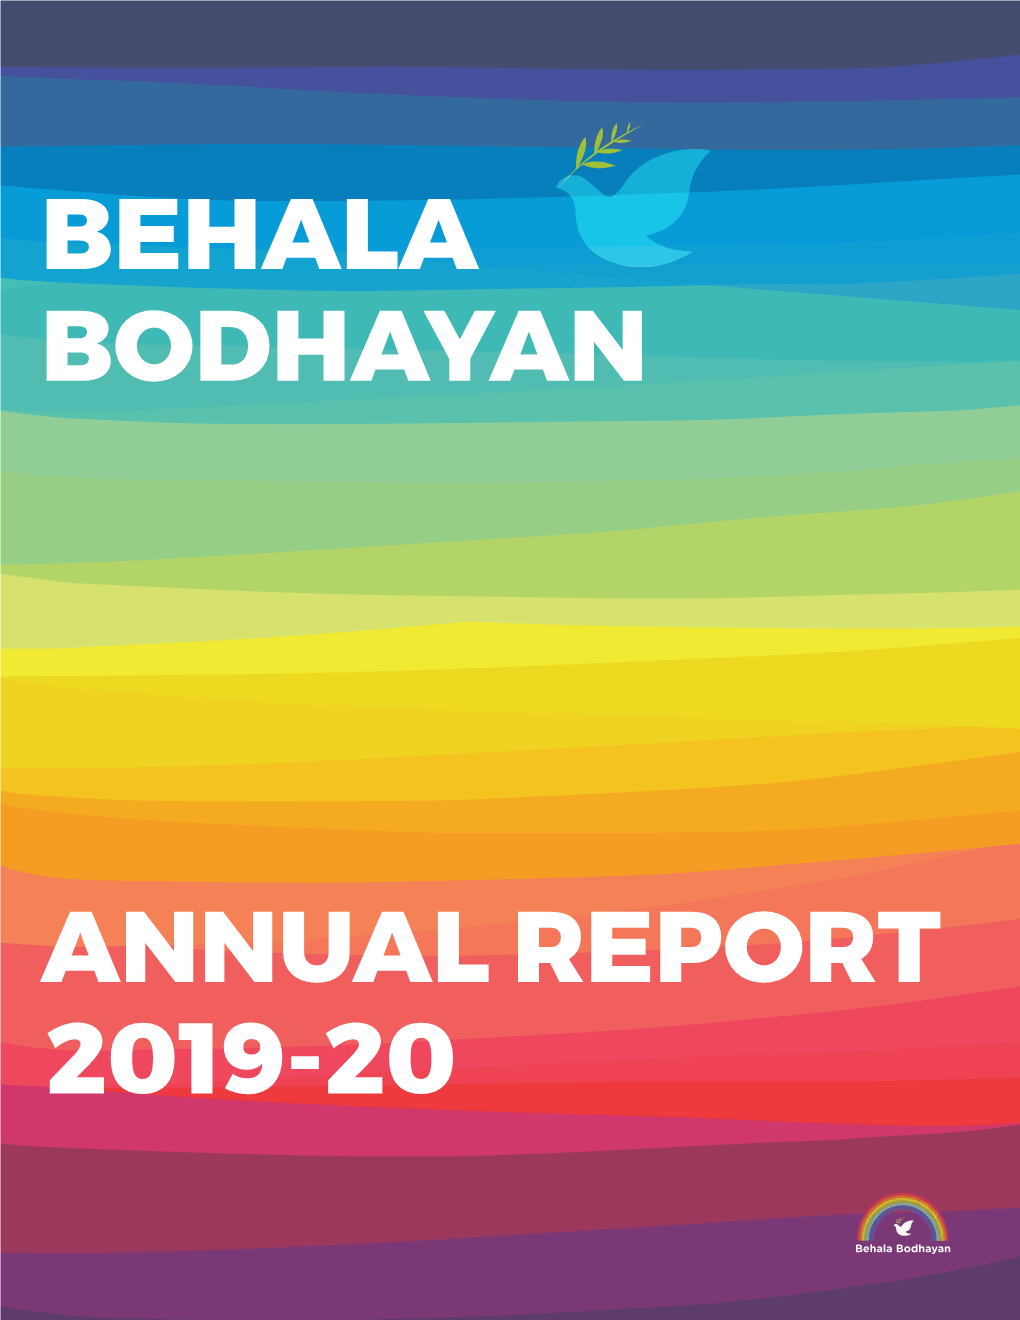 Annual Report 2019-20 Bodhayan Behala